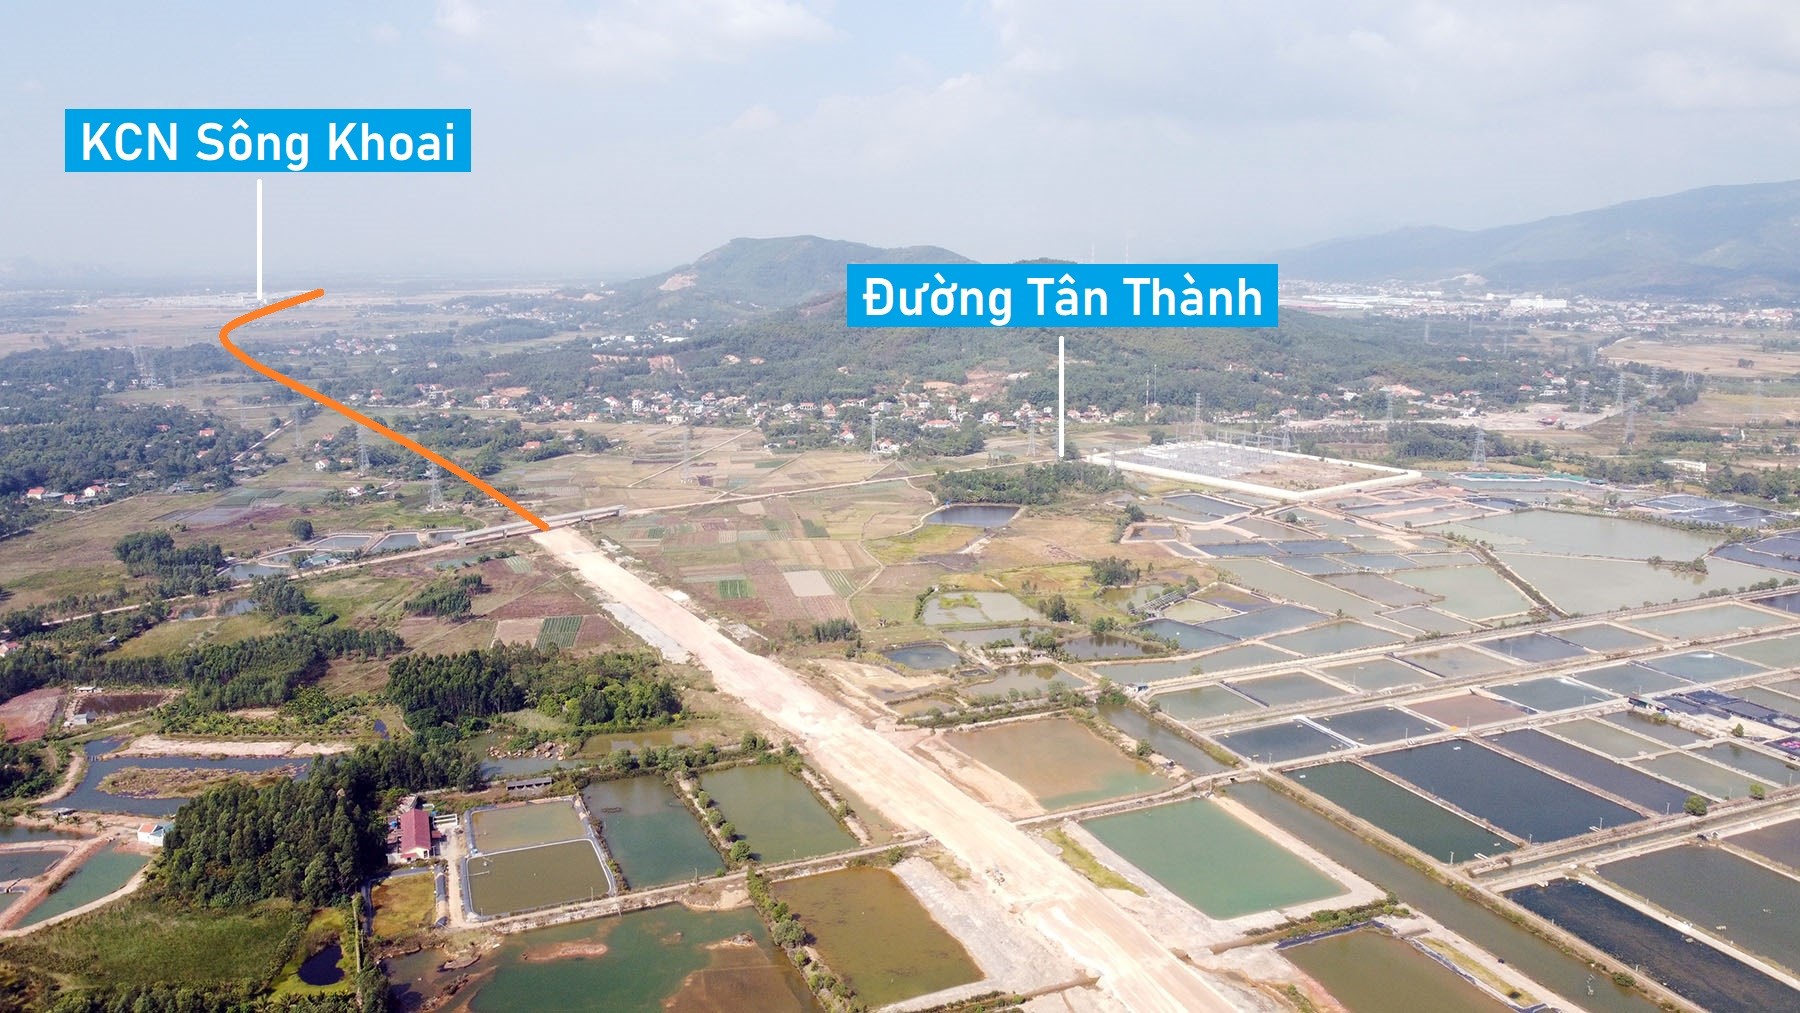 Hình ảnh đường nối cao tốc Hạ Long - Hải Phòng đến đường tỉnh 338 Quảng Ninh đang xây dựng